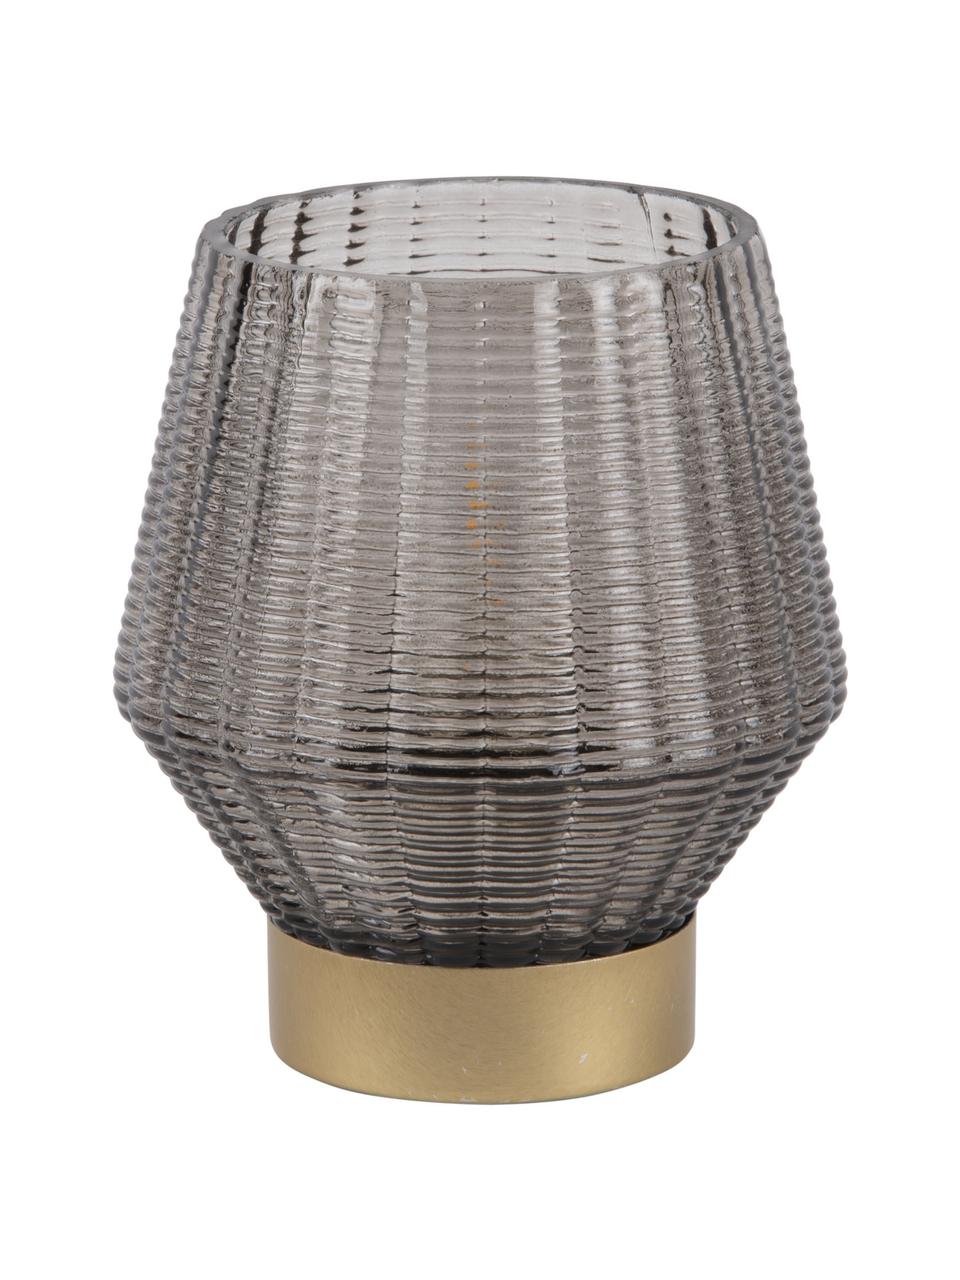 LED windlicht Votive in grijs, Glas, Verschrikking, Ø 12 x H 14 cm